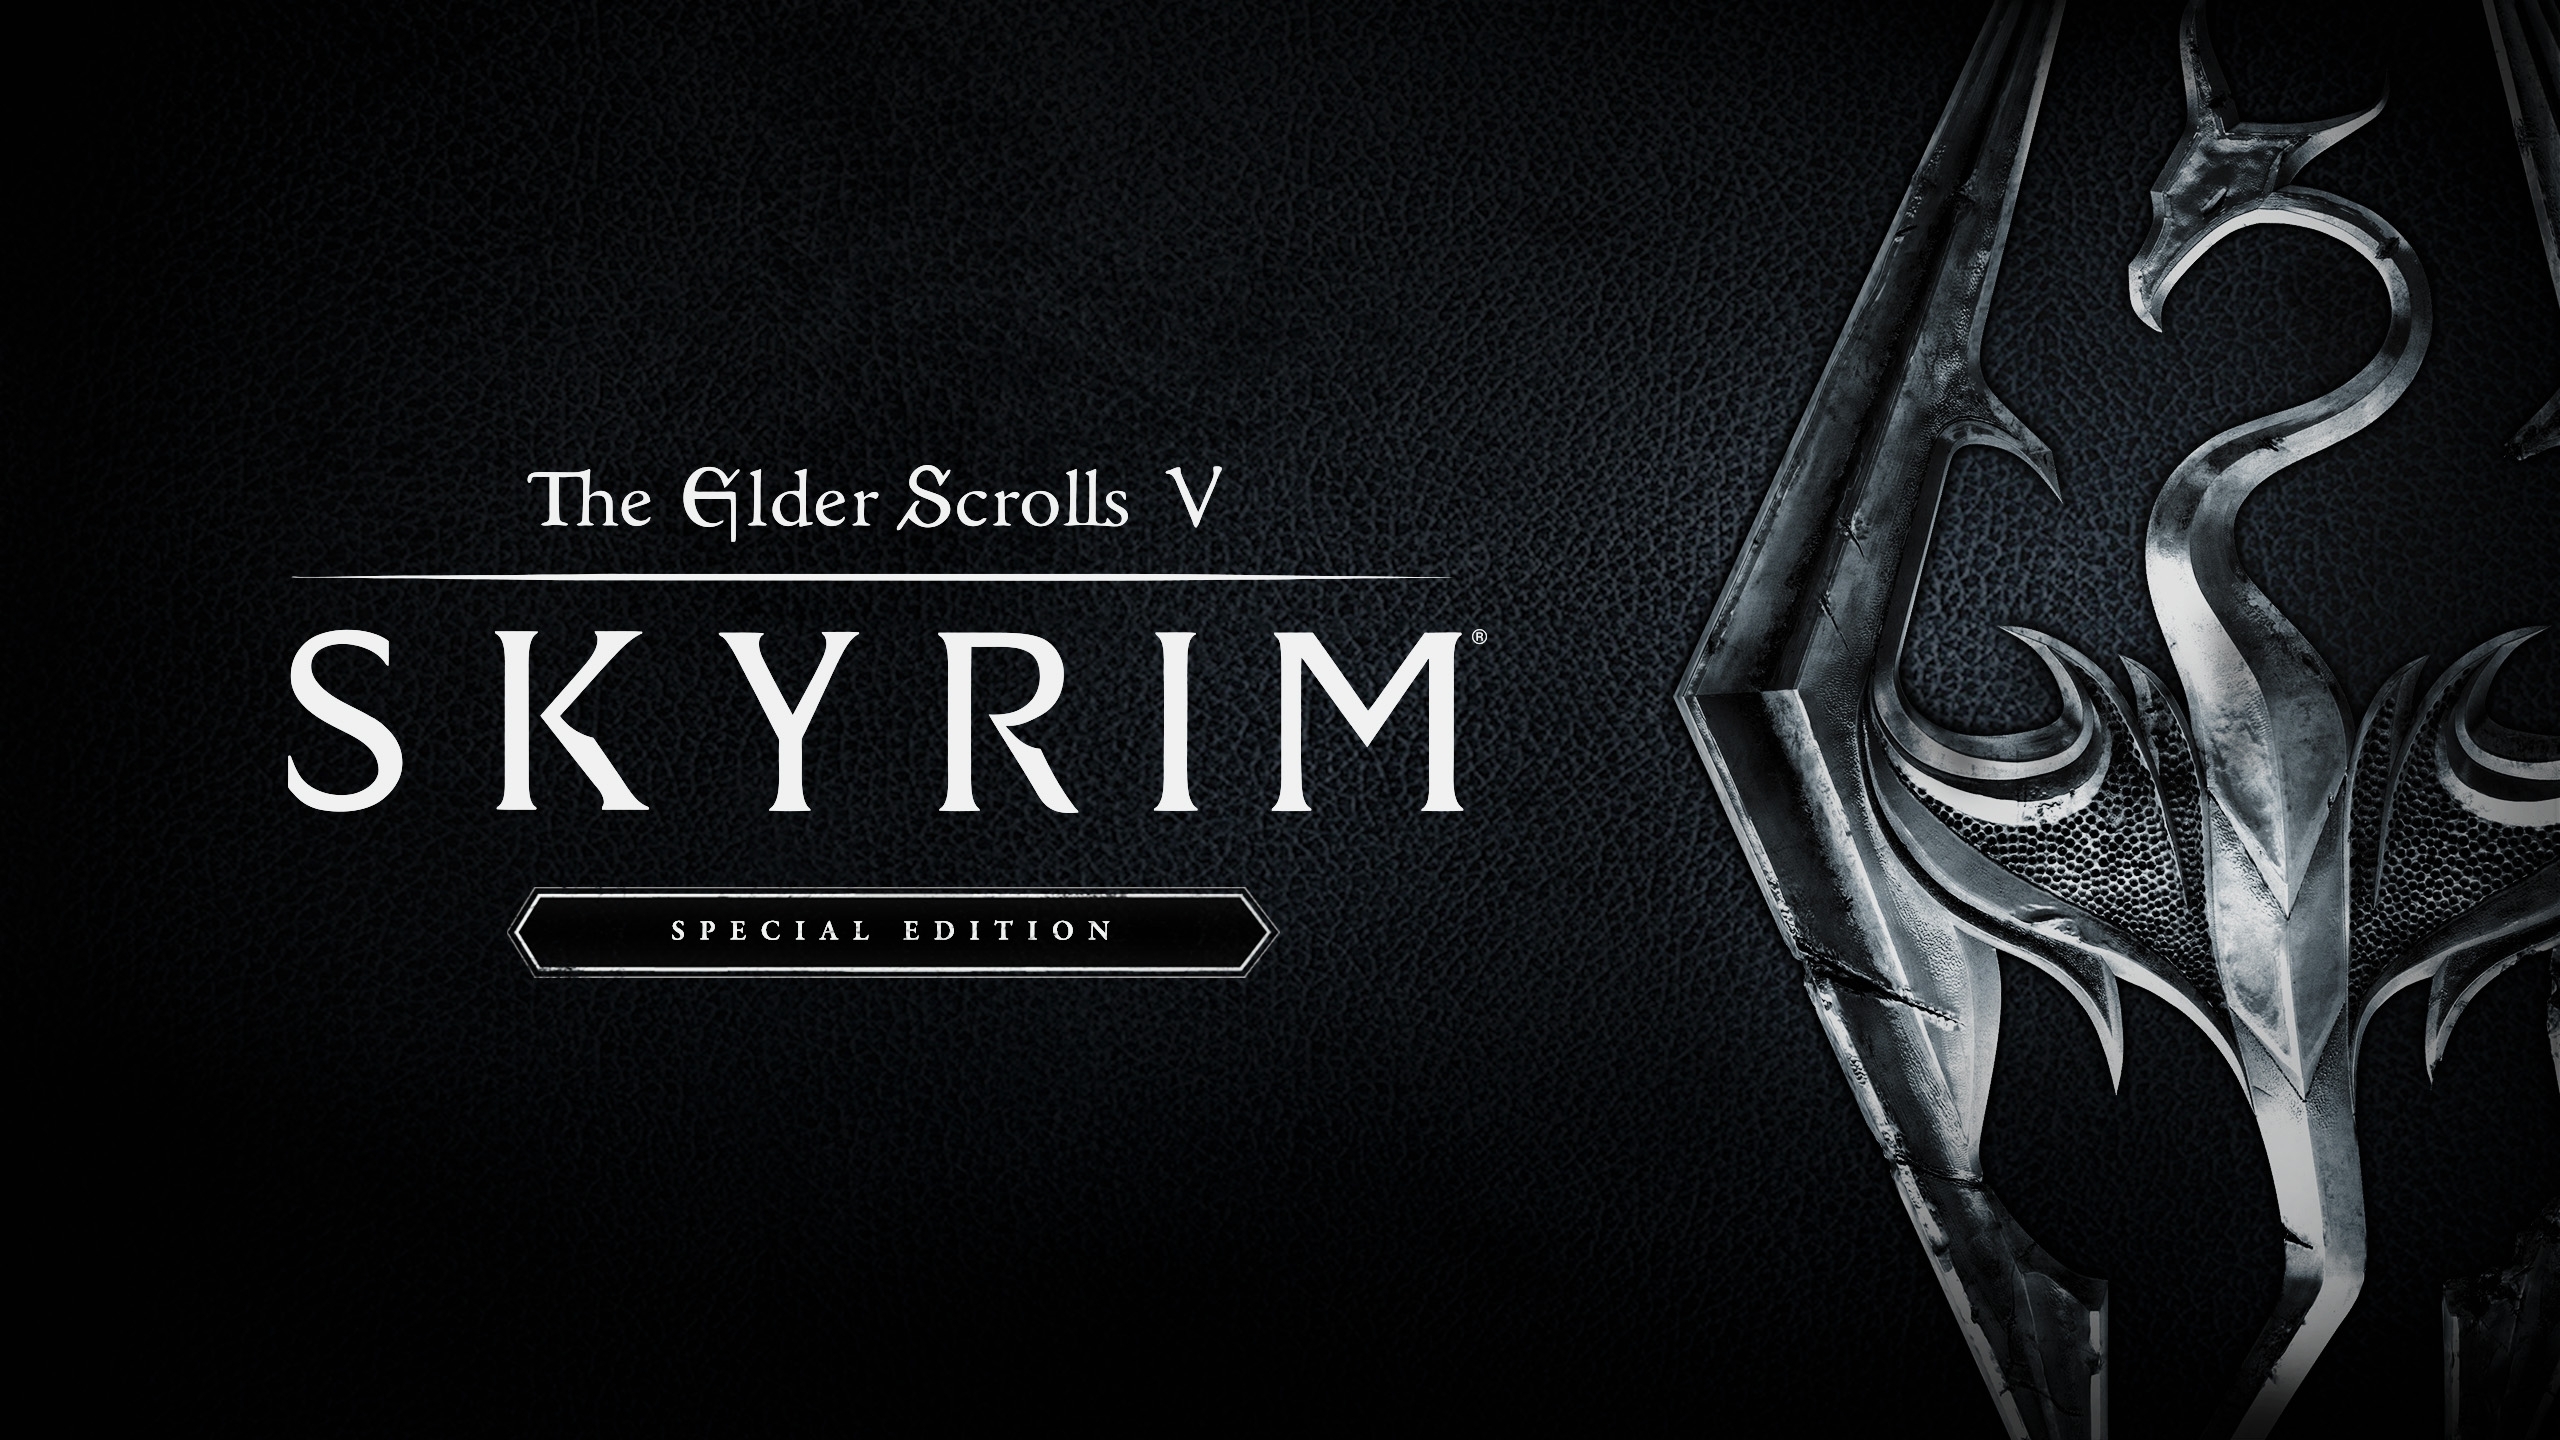 Buy The Elder Scrolls V: Skyrim Special Edition GOG.com